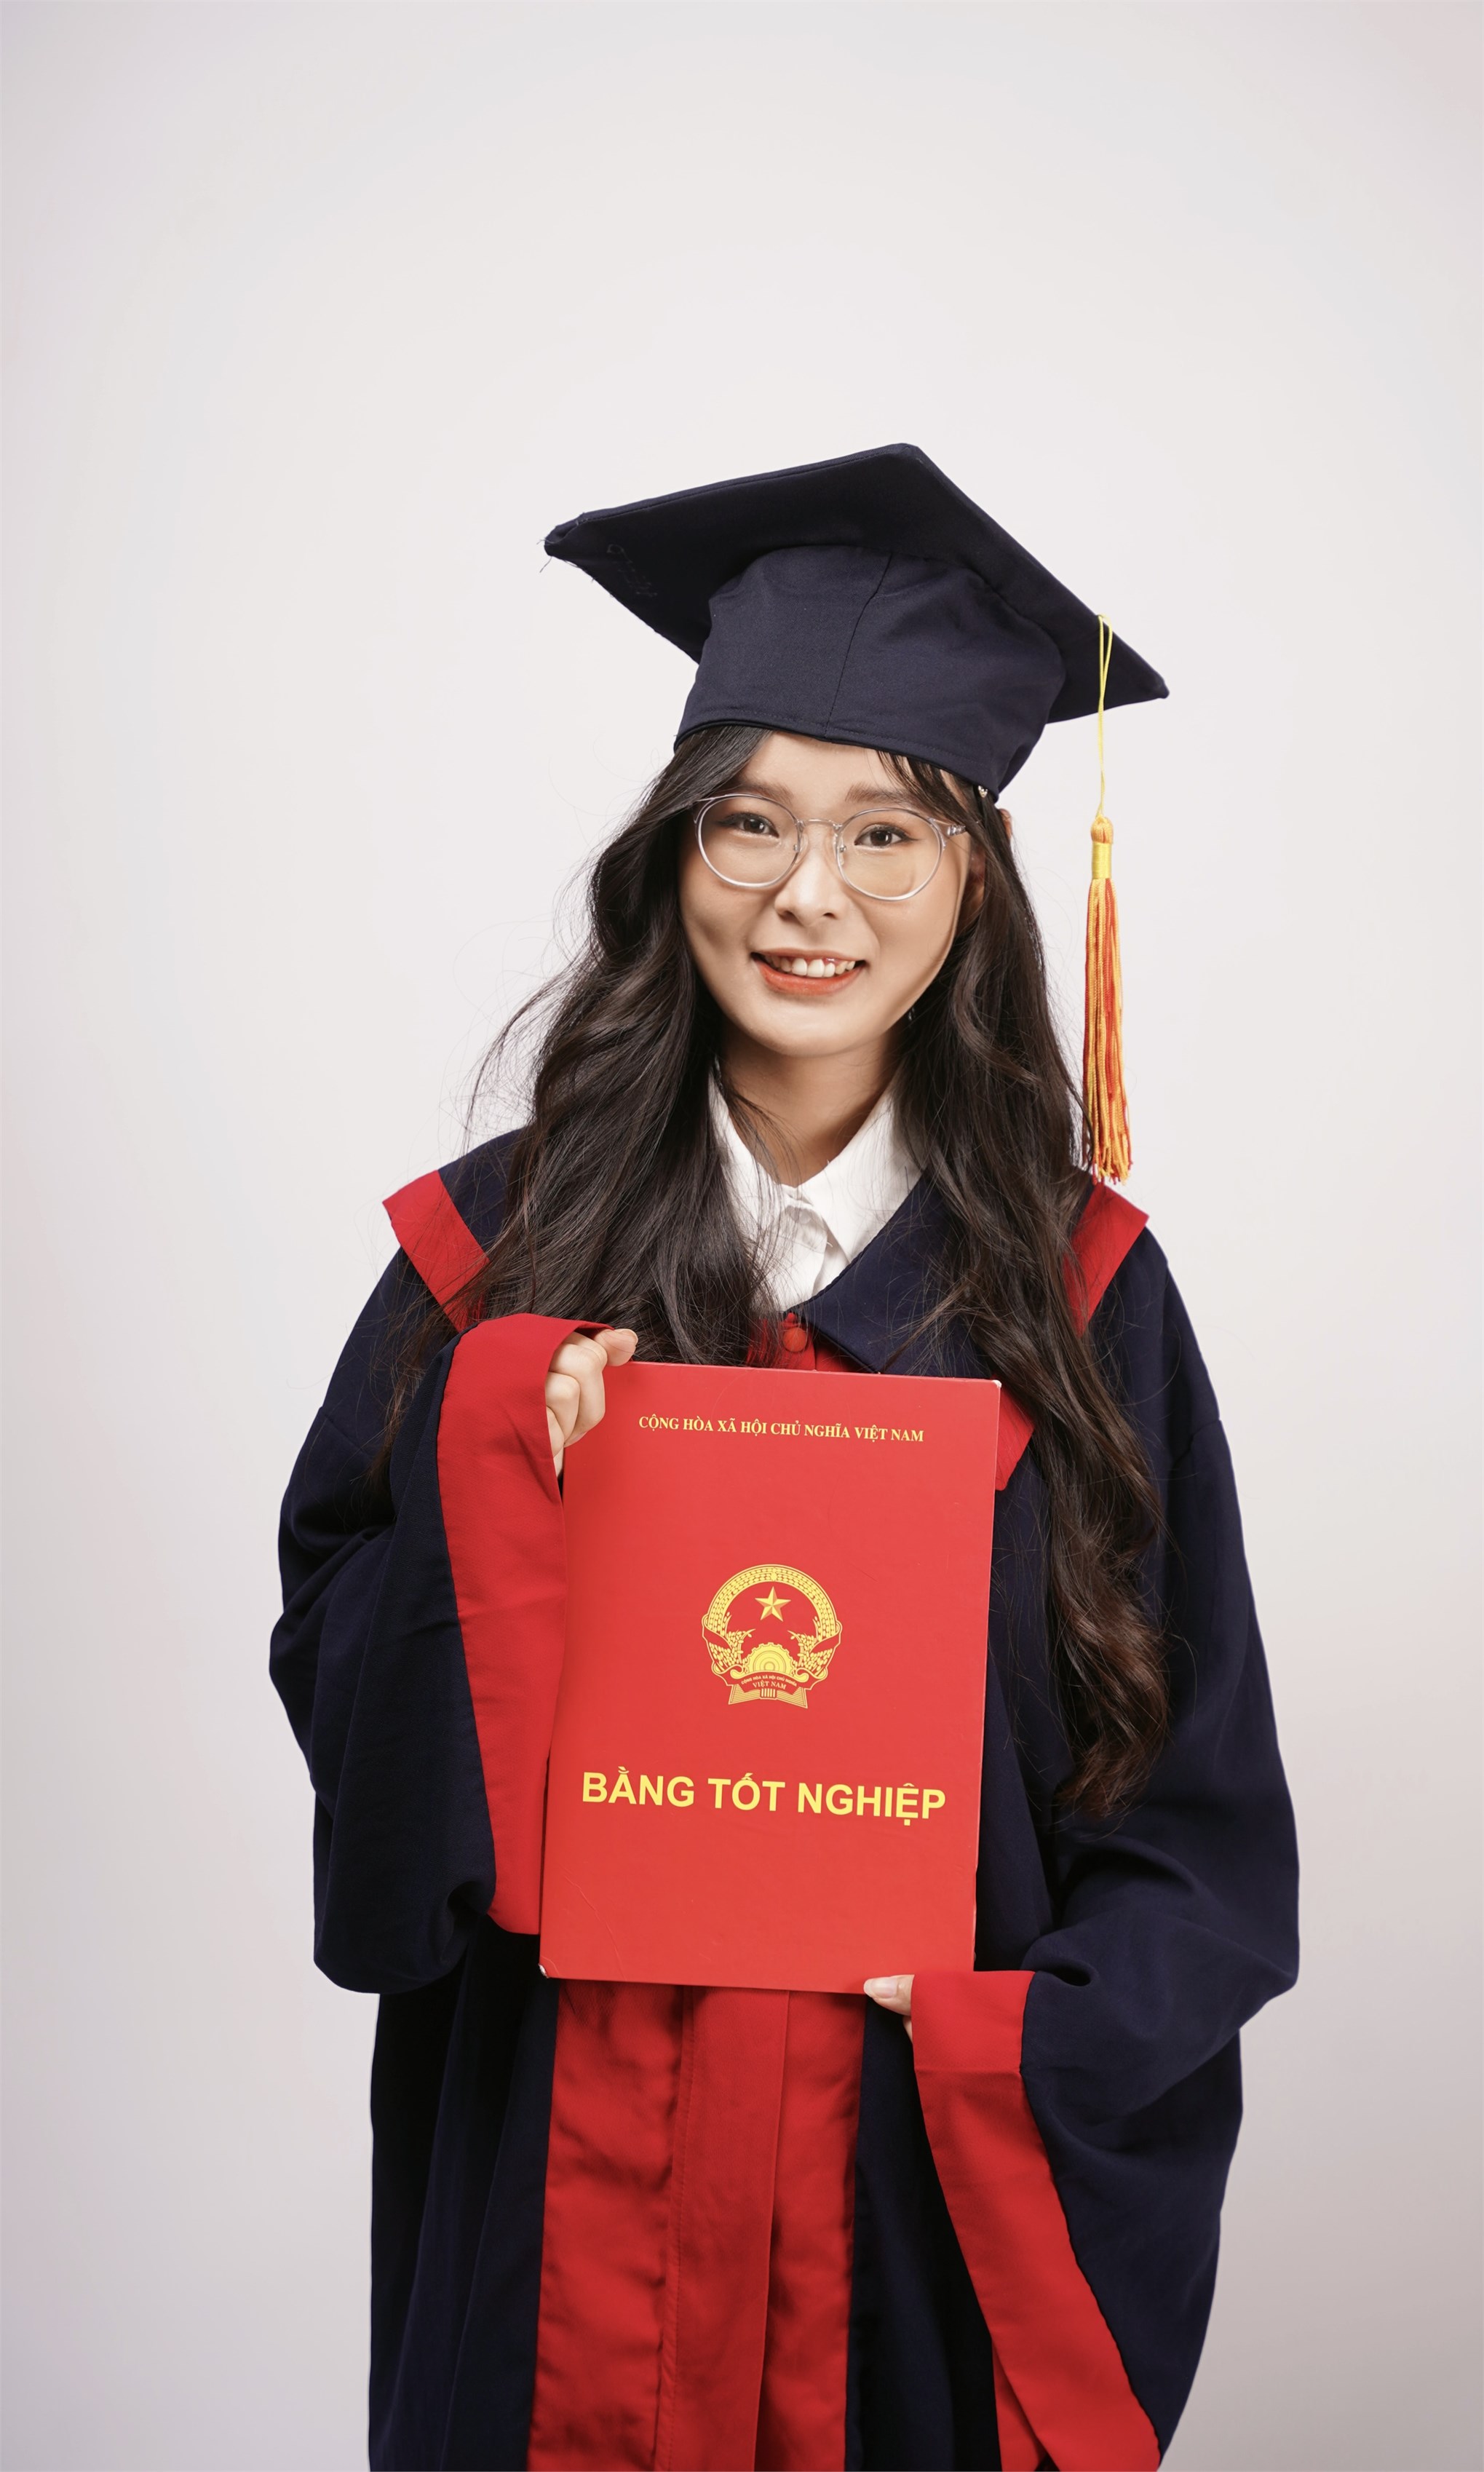 Nữ sinh lớp Ngôn ngữ Trung Quốc nhận học bổng 1 tỉ đồng